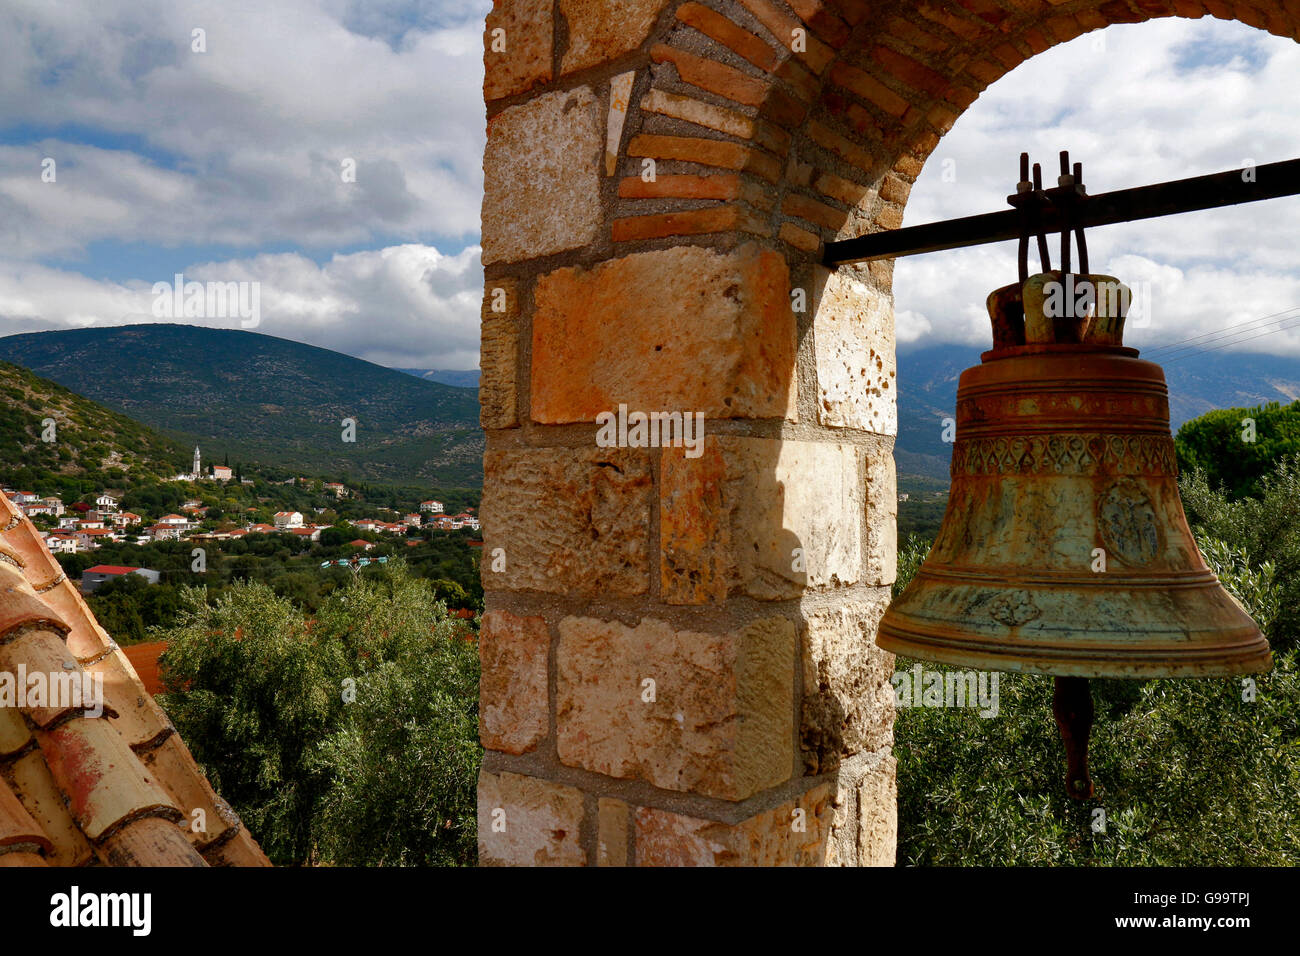 Kultige Blick auf goldene Glocke und typische Kirche auf der griechischen Insel Kephallonia Griechenland Stockfoto